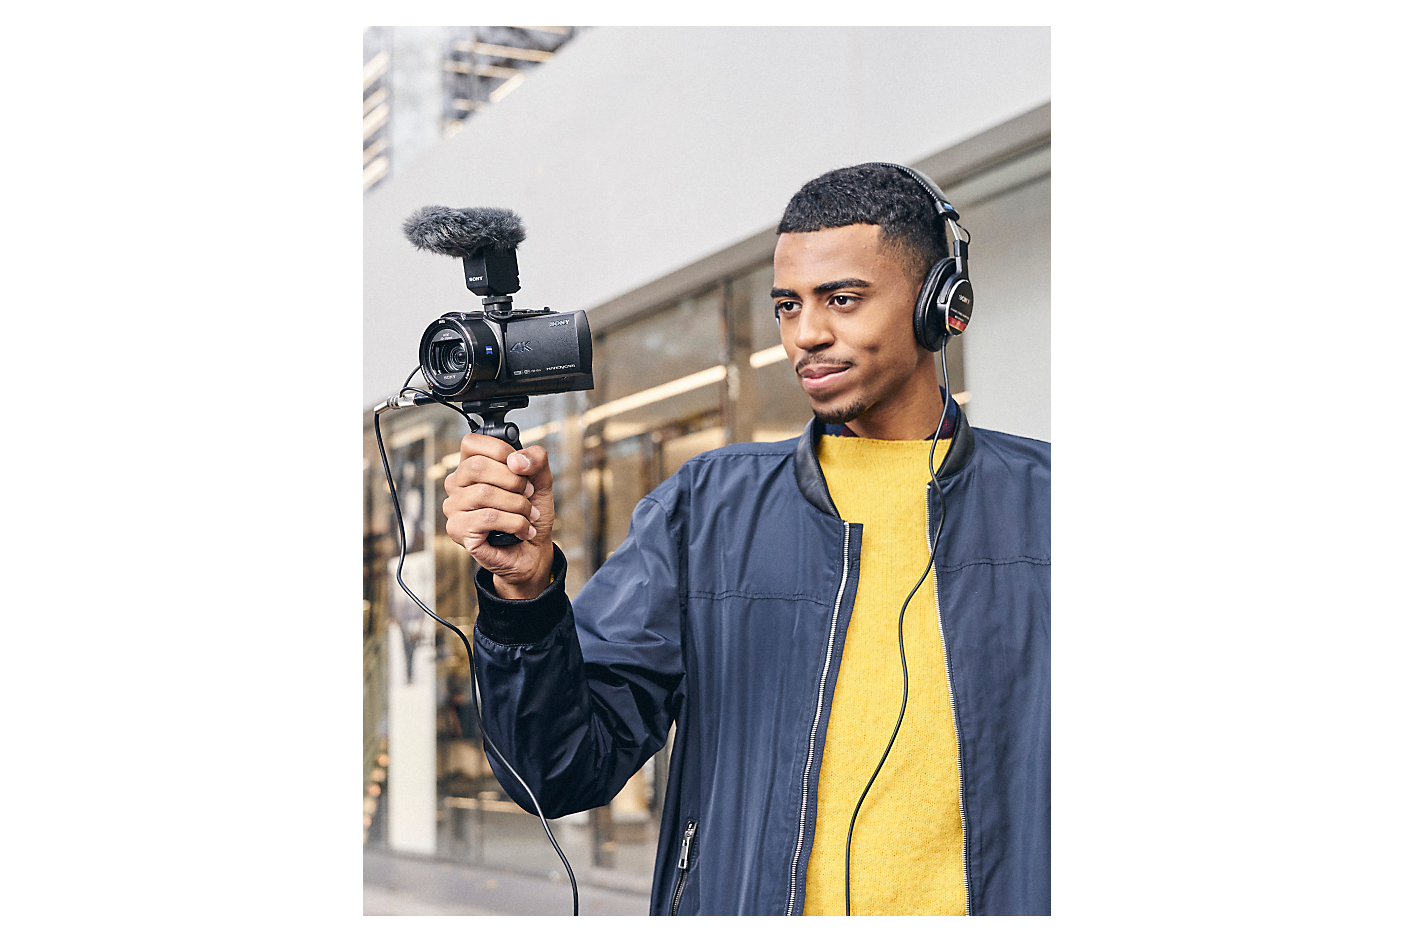 Muškarac koji nosi slušalice drži Sony fotoaparat sa pričvršćenim rukohvatom za snimanje i mikrofonom.